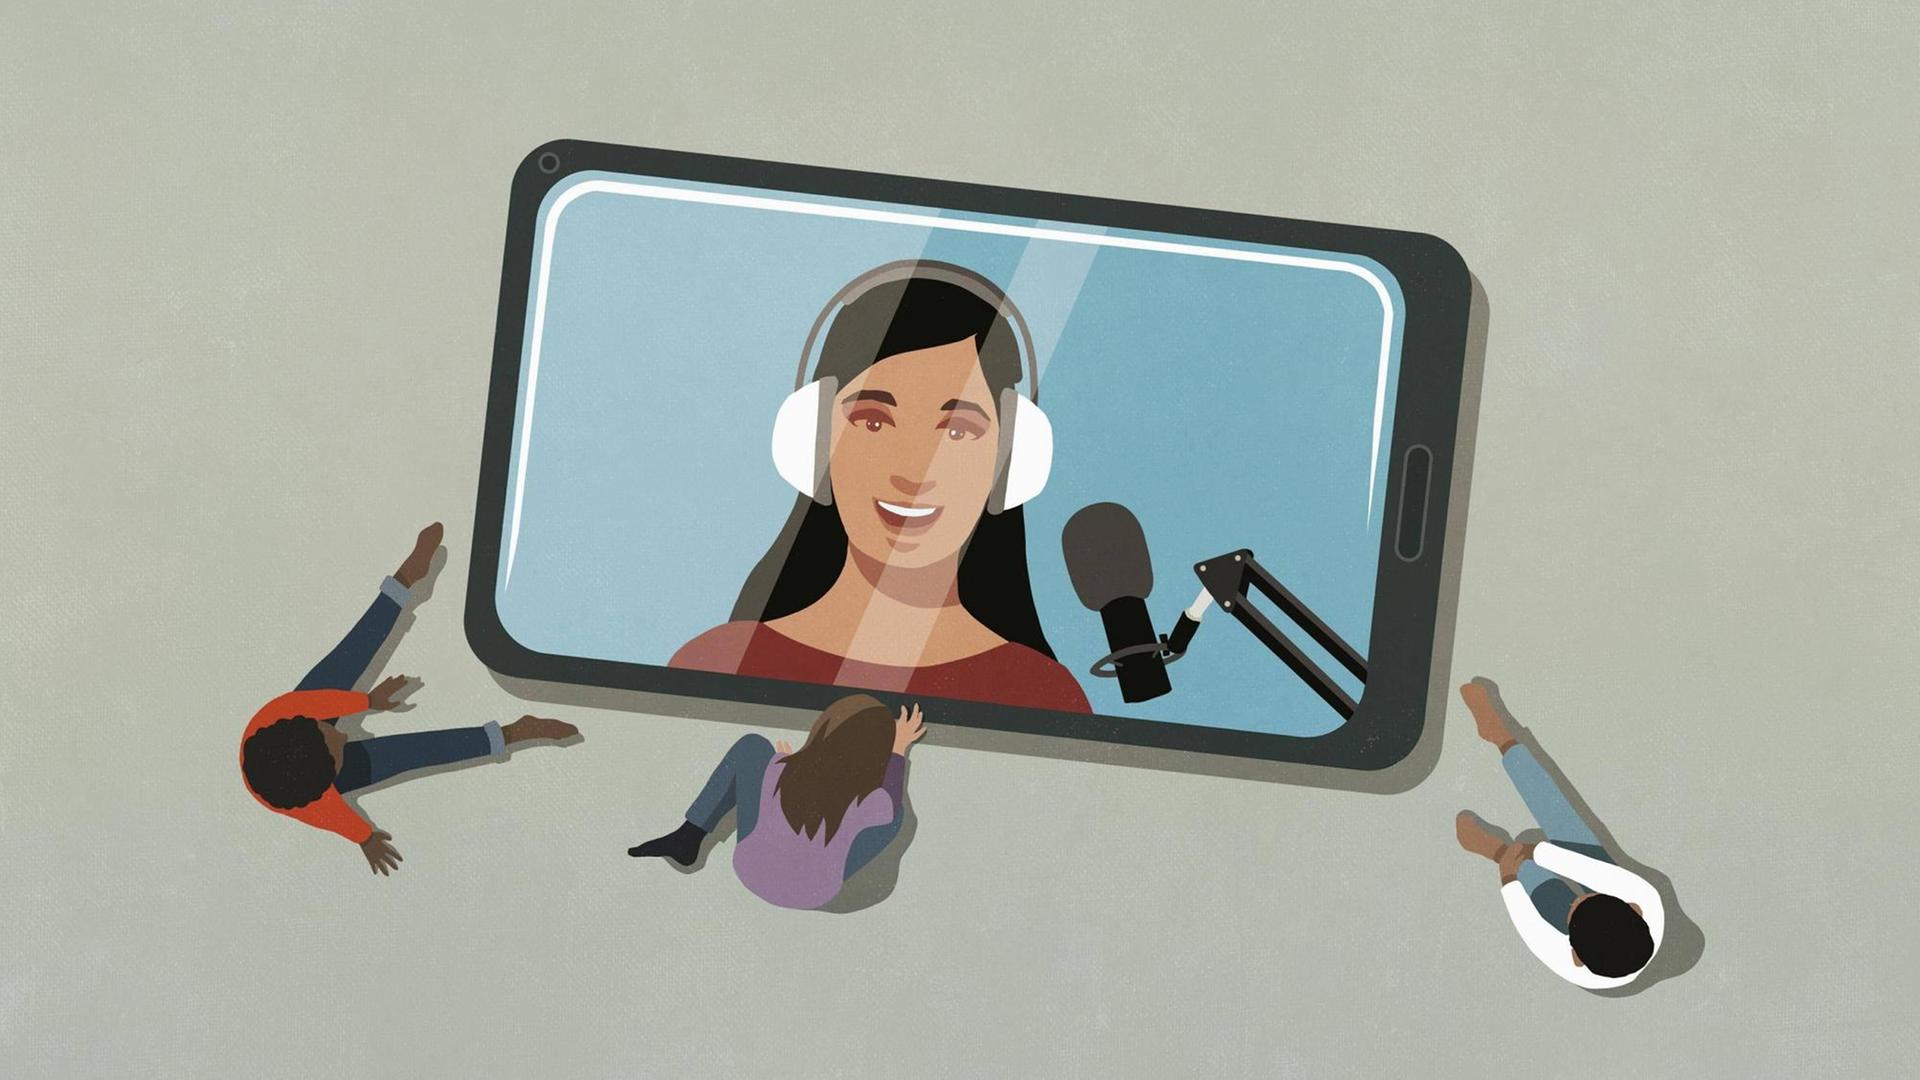 Auf dem Bild sieht man ein Smartphone-Bildschirm. Darauf ist eine Frau mit Kopfhörern und einem Mikrofon abgebildet. Um diesen Bildschirm versammeln sich Hörer*innen.